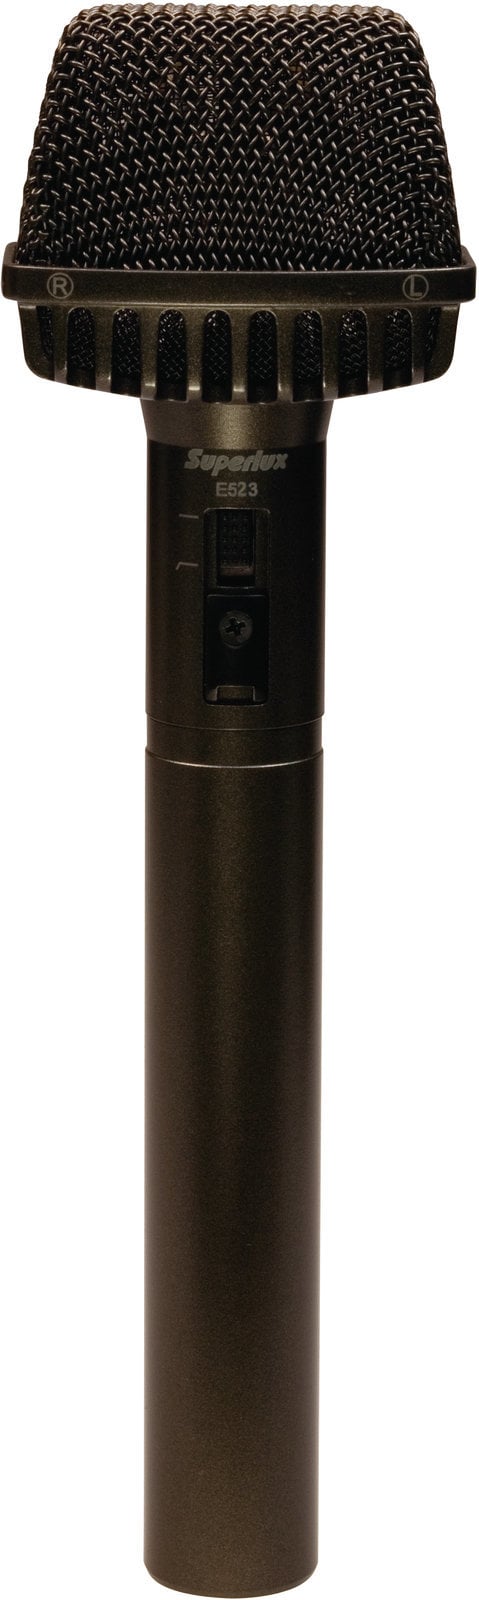 Stereo Mikrofon Superlux E523D